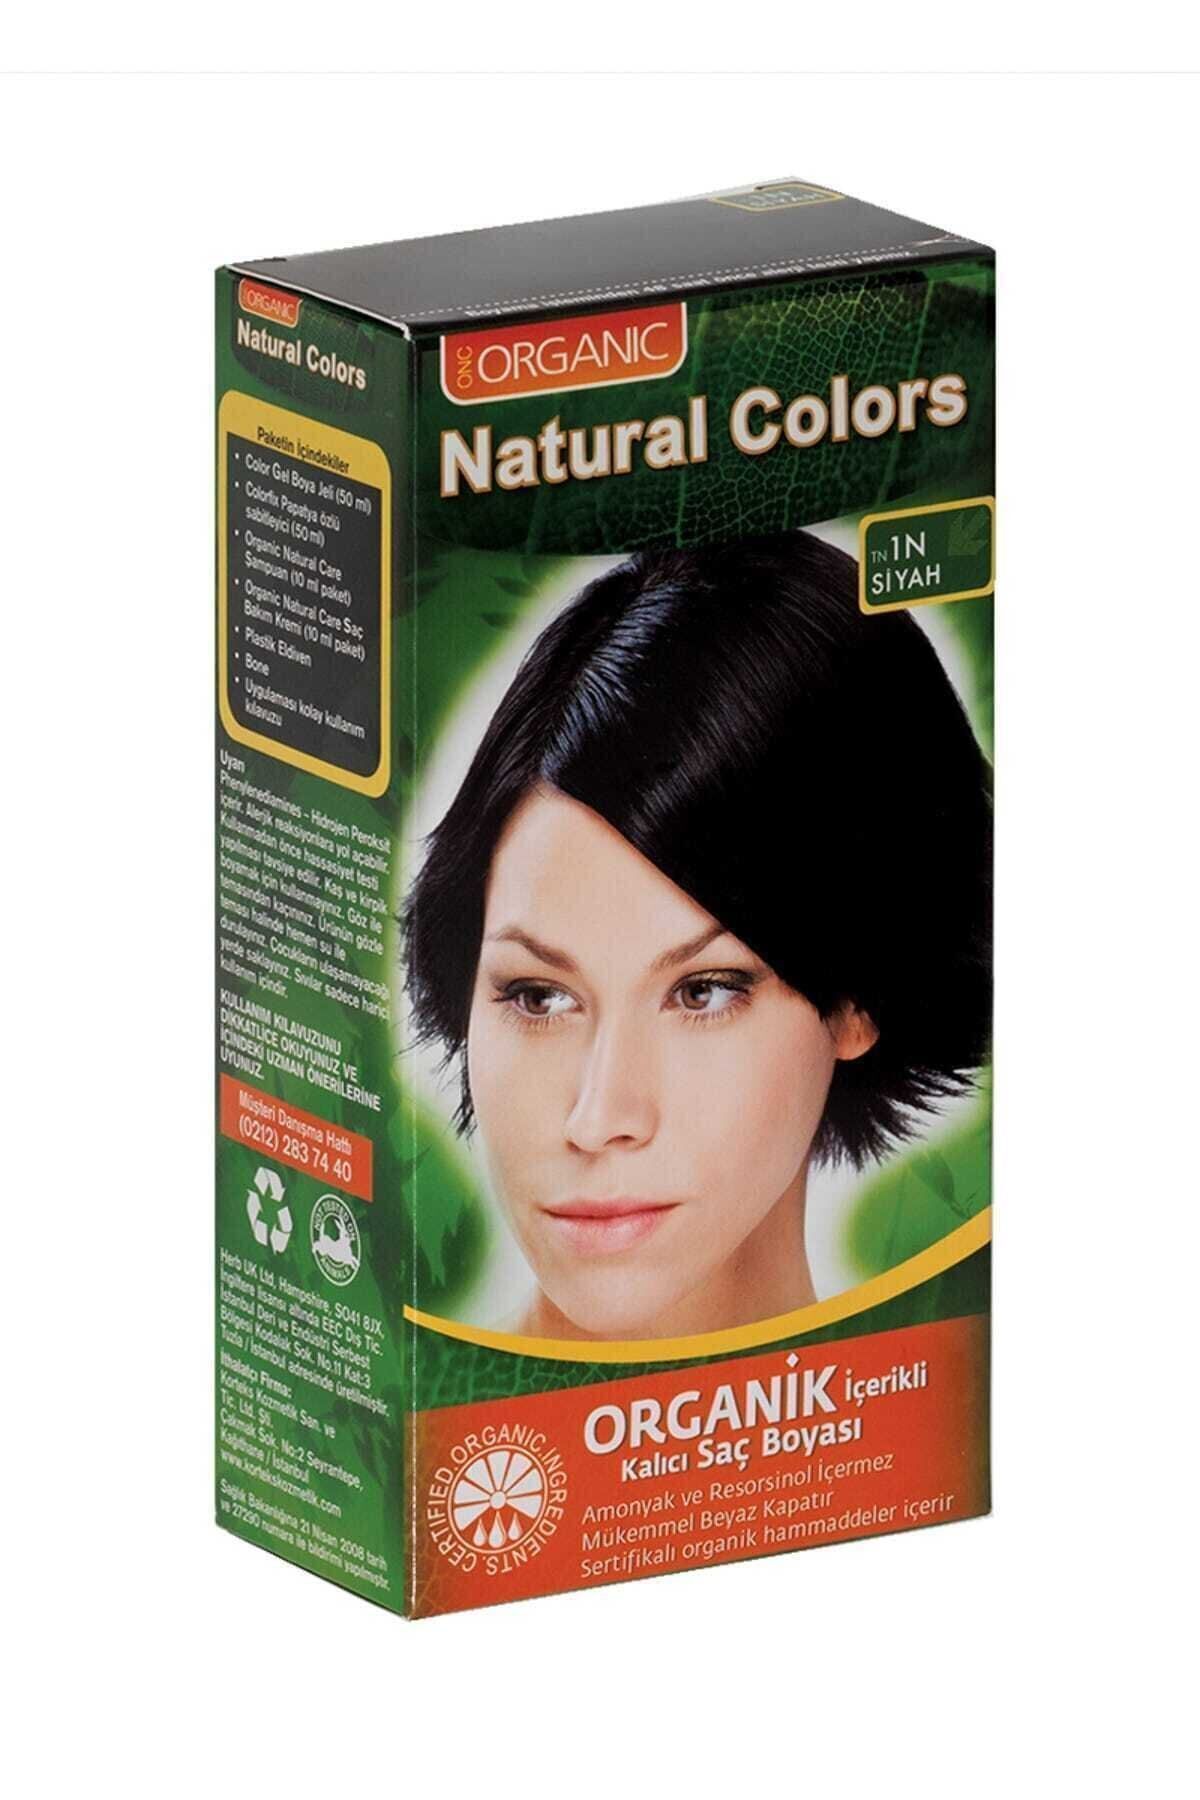 Organic Natural Colors Natural Colors 1n Siyah Organik Saç Boyası